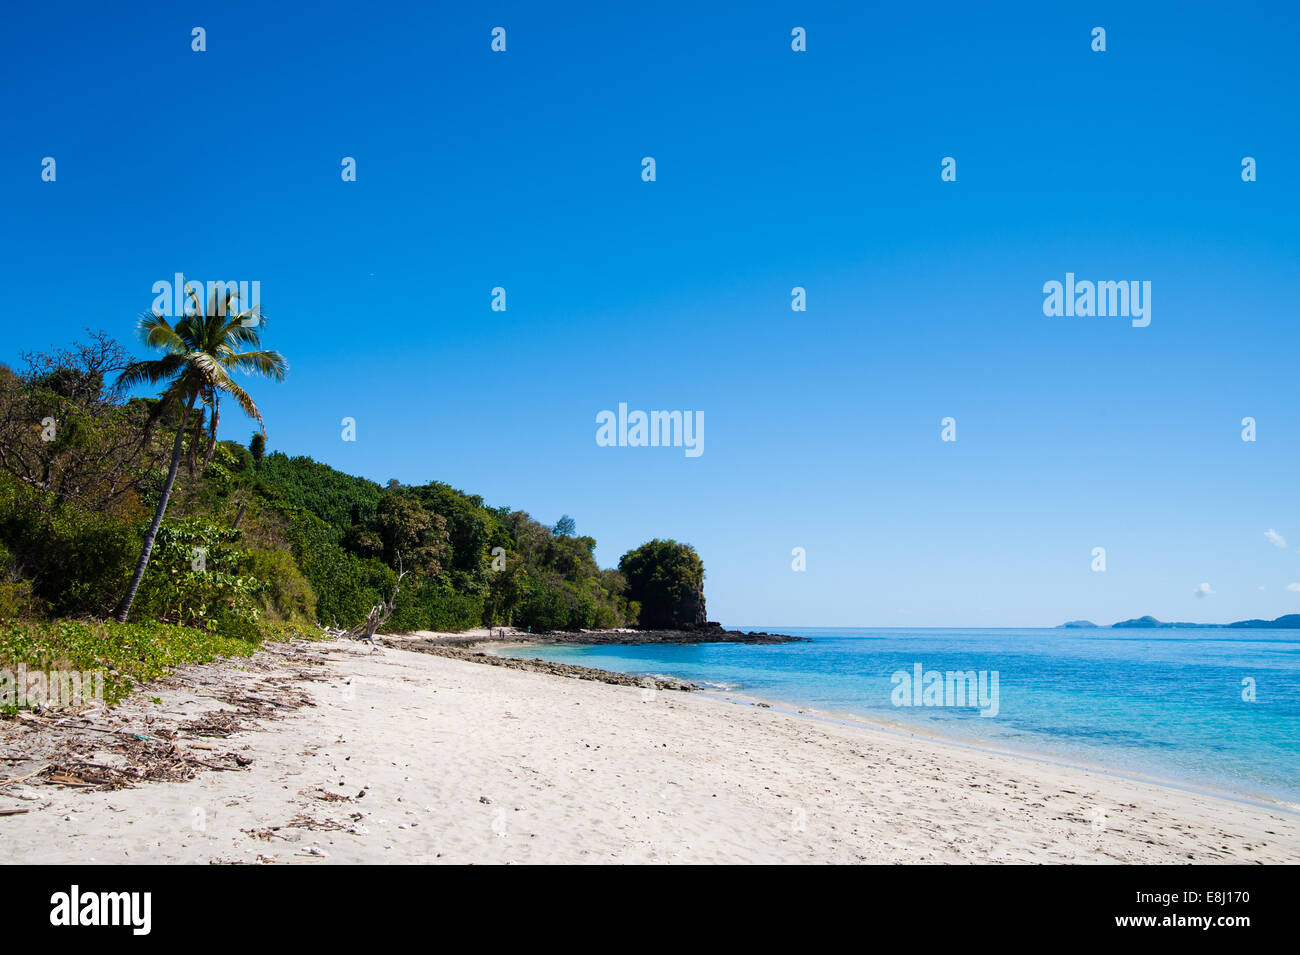 La playa de la isla de Nosy Be, Madagascar, Foto de stock